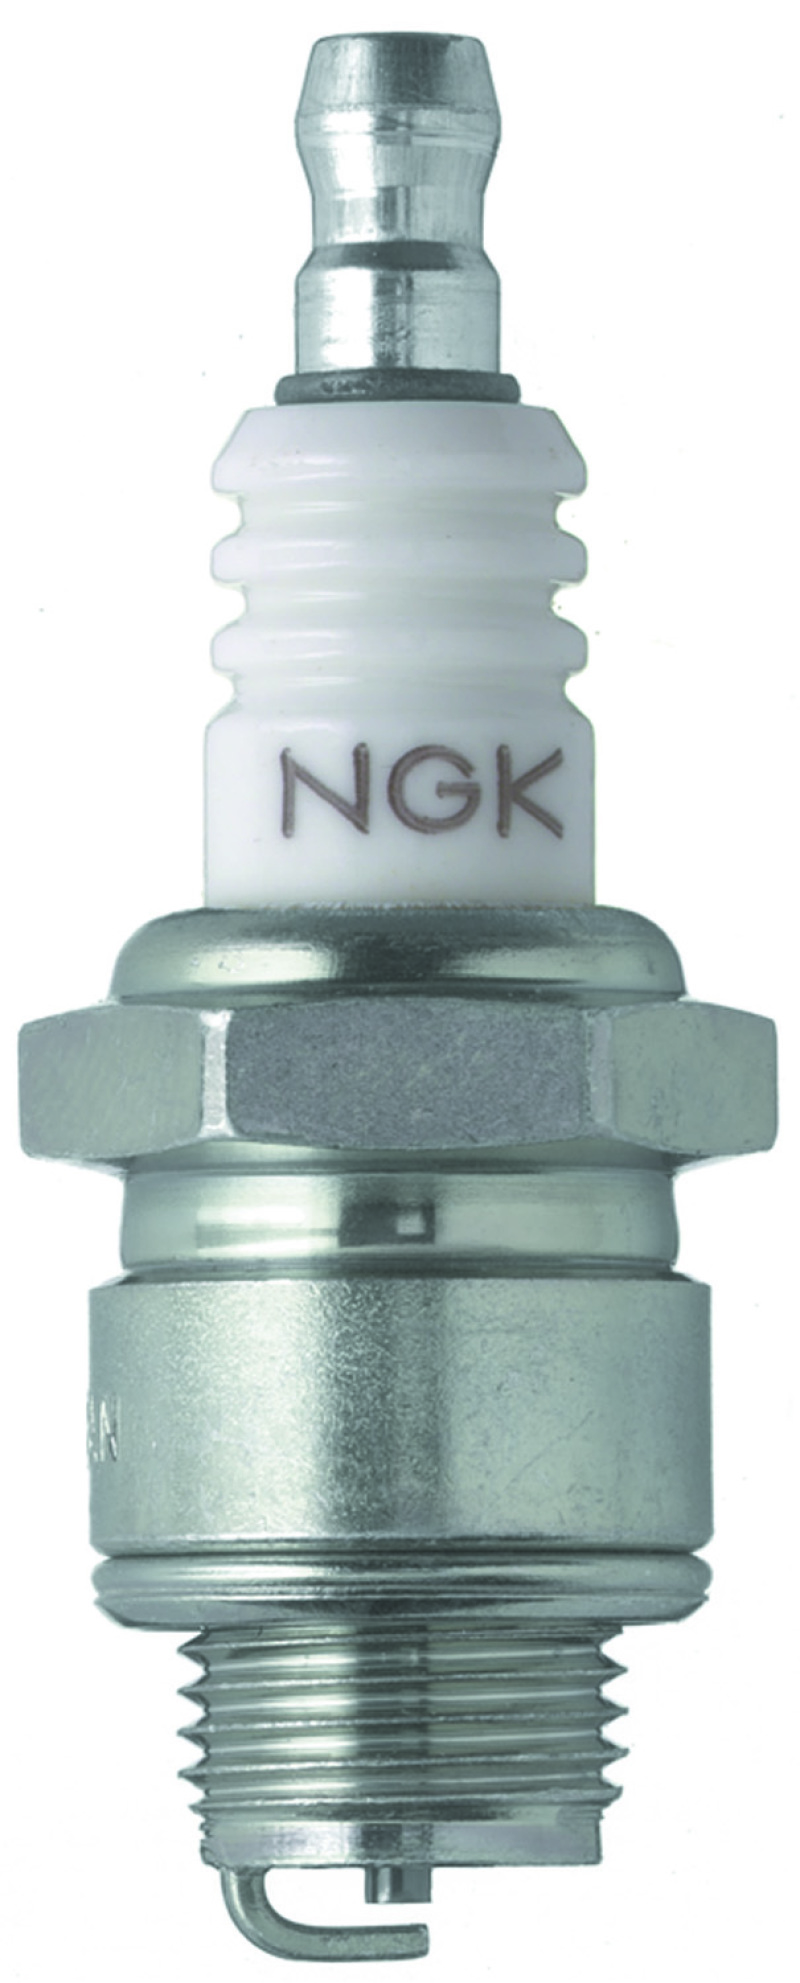 NGK Nickel Spark Plug Box of 10 (BR4-LM) - 4133